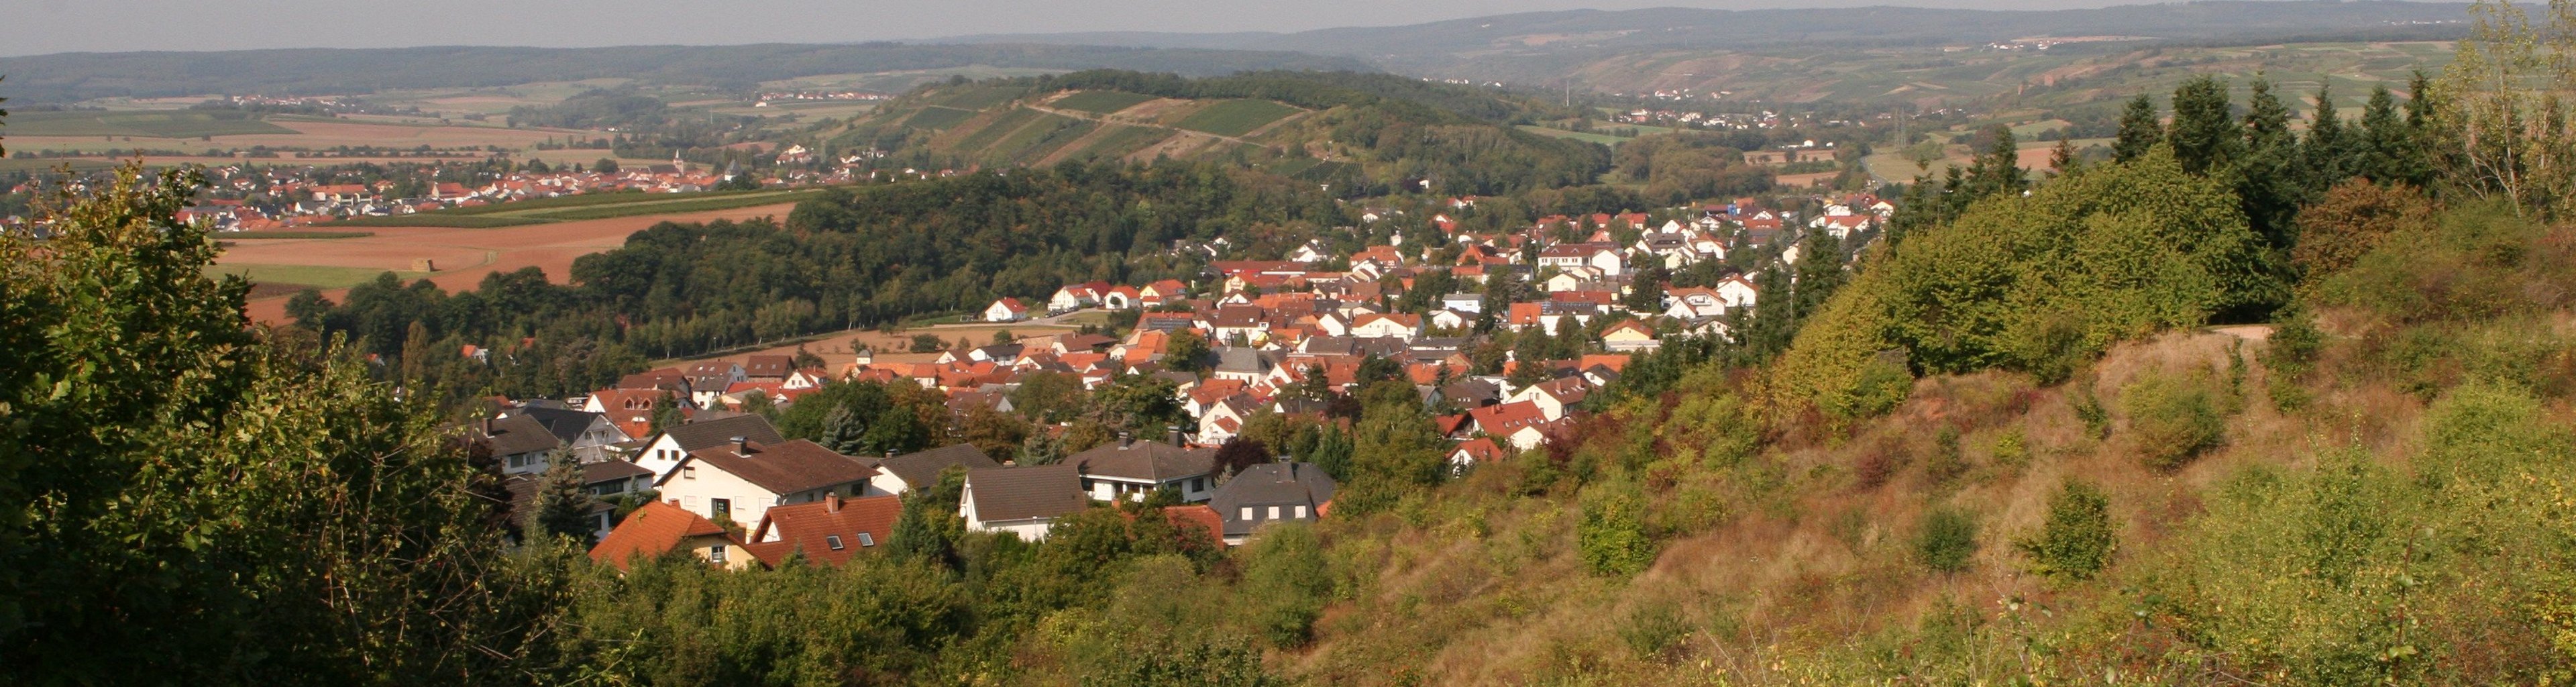 Hargesheim | Verbandsgemeinde Rüdesheim